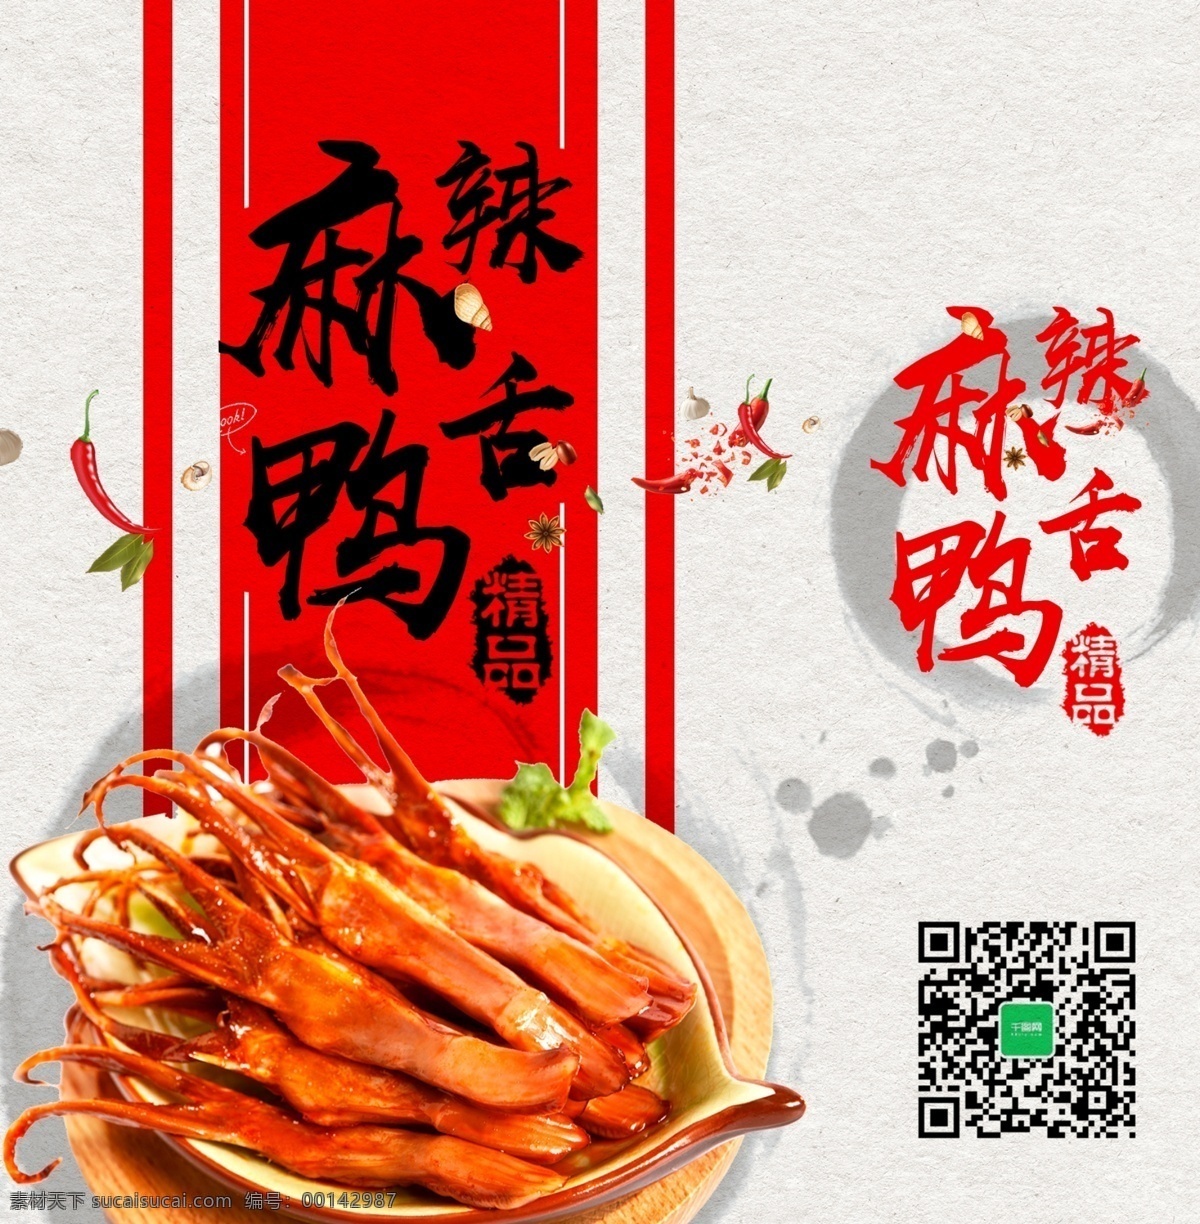 精美 手提袋 白色 简约 麻辣 鸭舌 包装设计 红色 卤味 麻辣鸭舌 美食 年货 特产 中国风